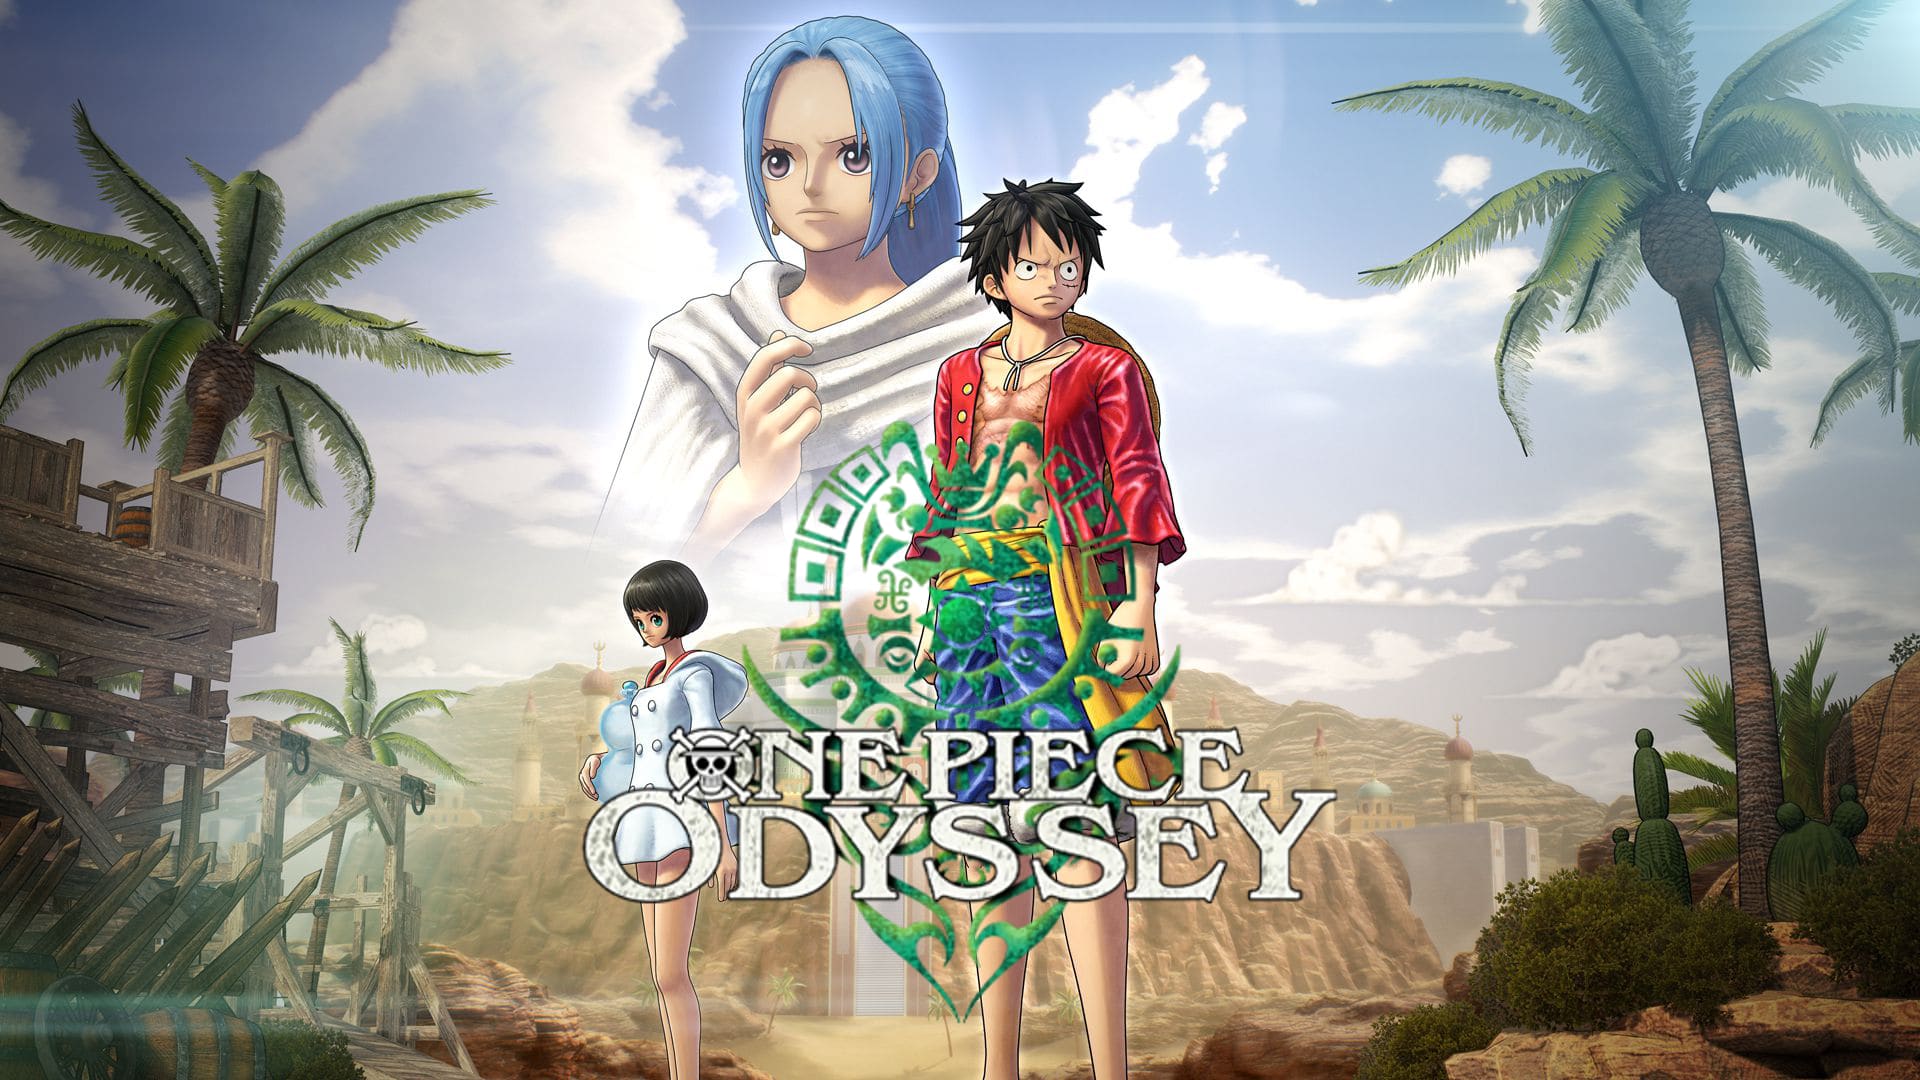 Katsuaki Tsuzuki o One Piece Odyssey: czuliśmy presję, ale jesteśmy wdzięczni, że mogliśmy pracować nad tą grą [WYWIAD]